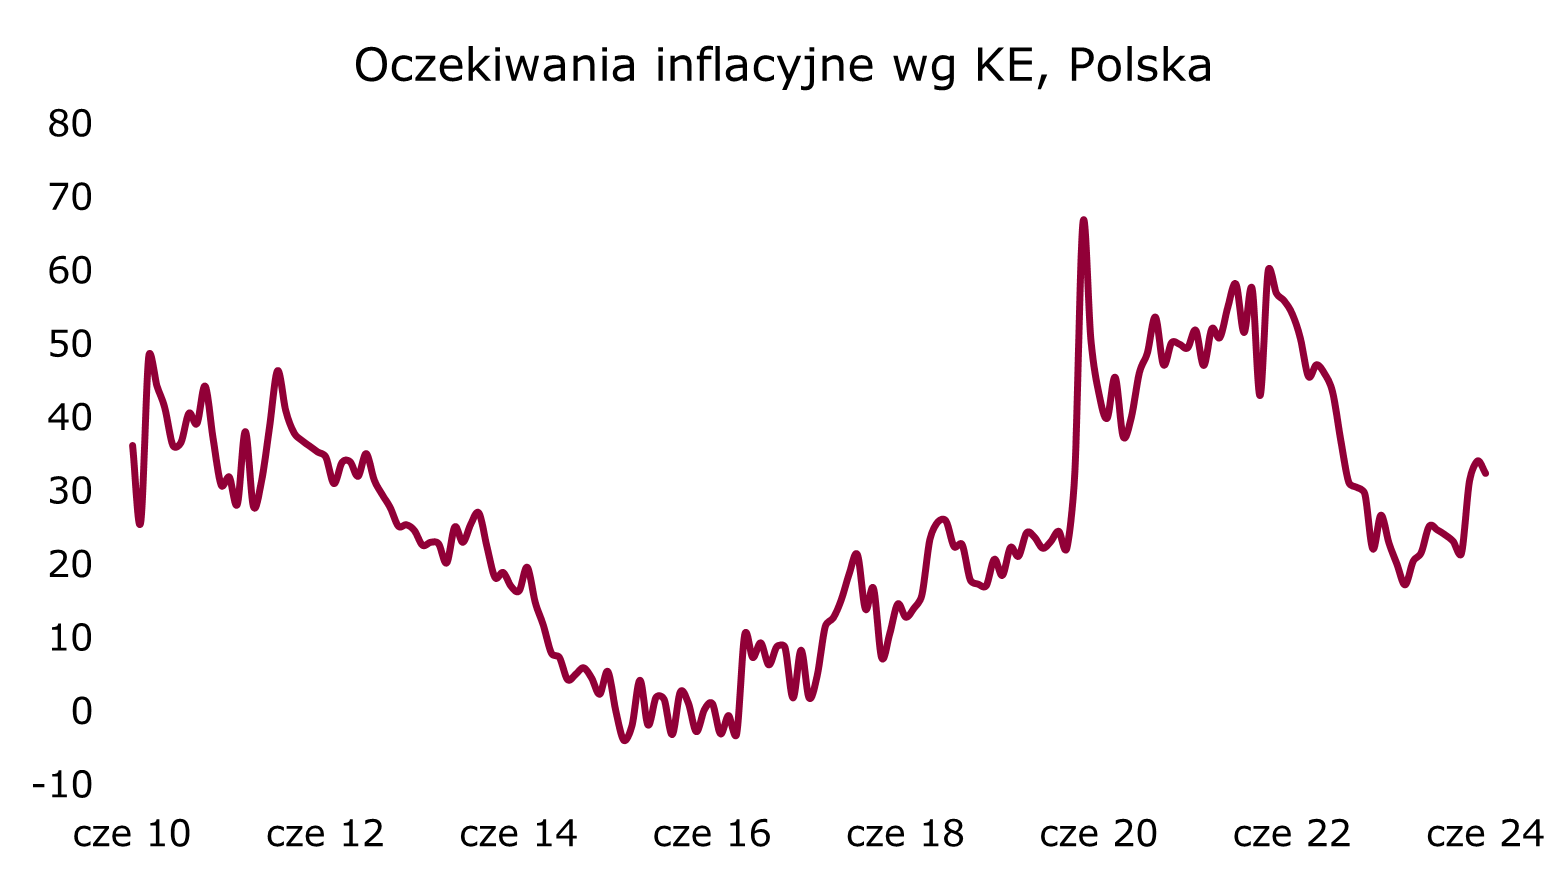 oczekiwania inflacyjne w Polsce wg KE